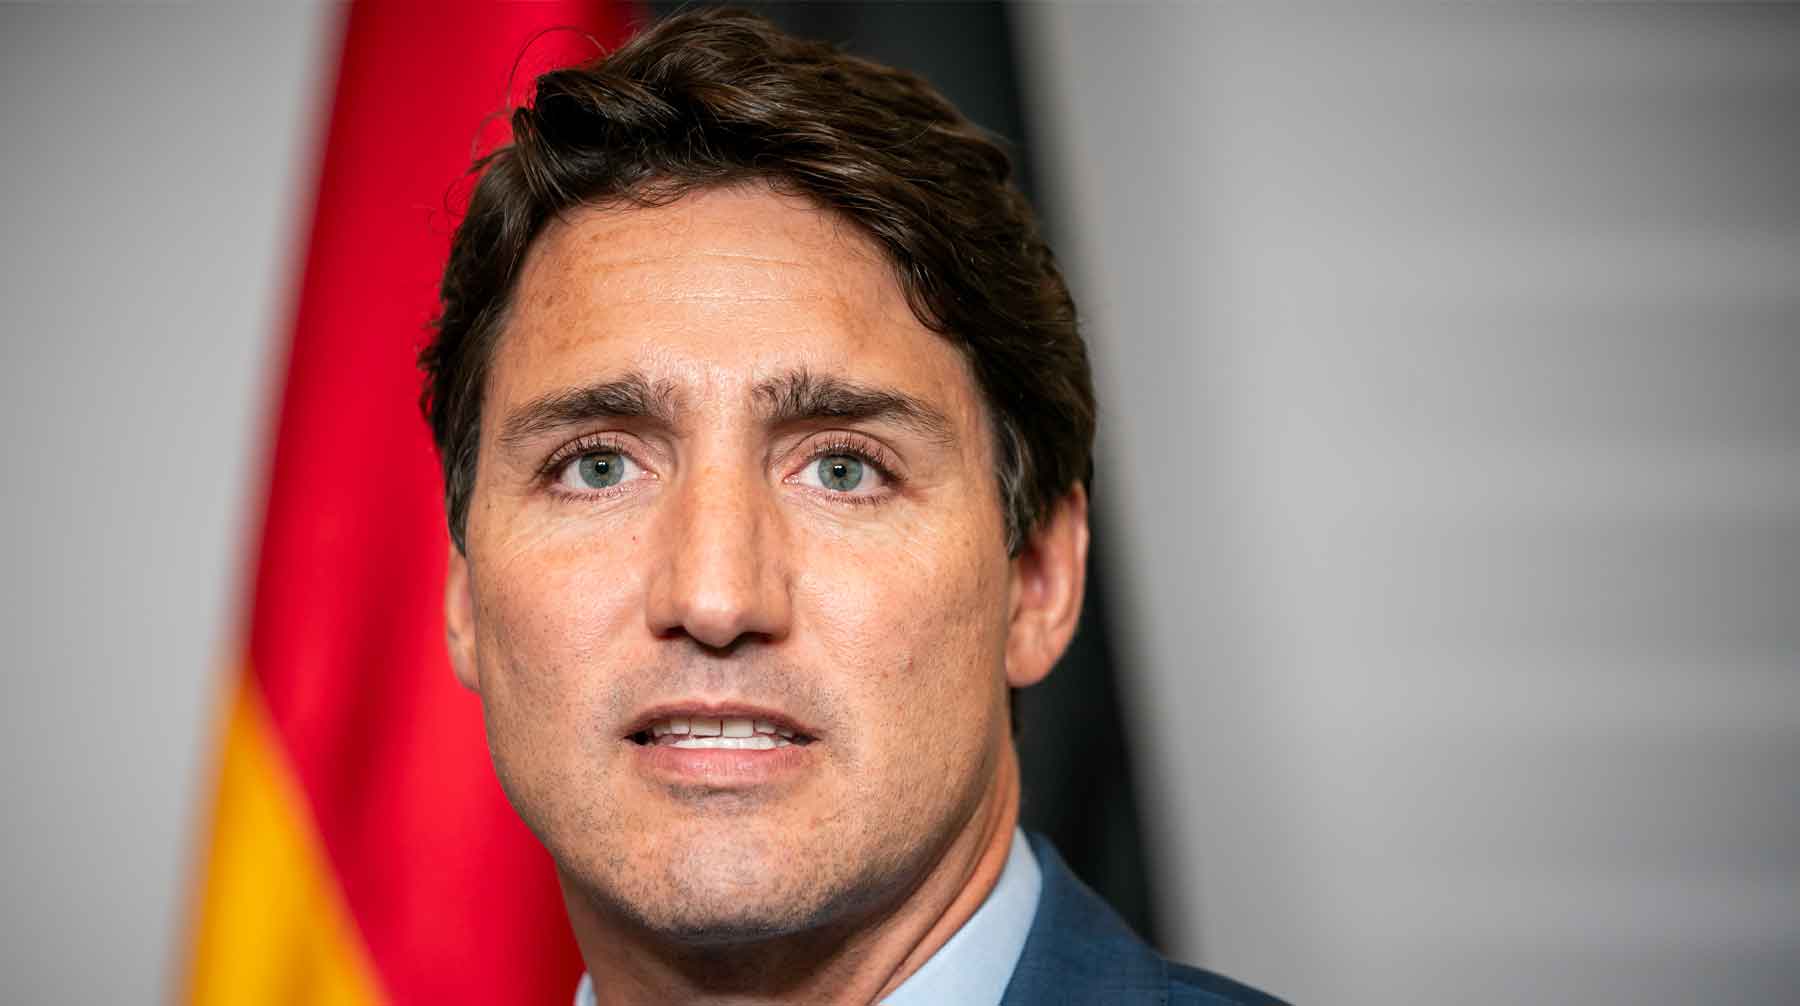 При этом канадский премьер-министр сможет сформировать кабинет либерального меньшинства Джастин Трюдо